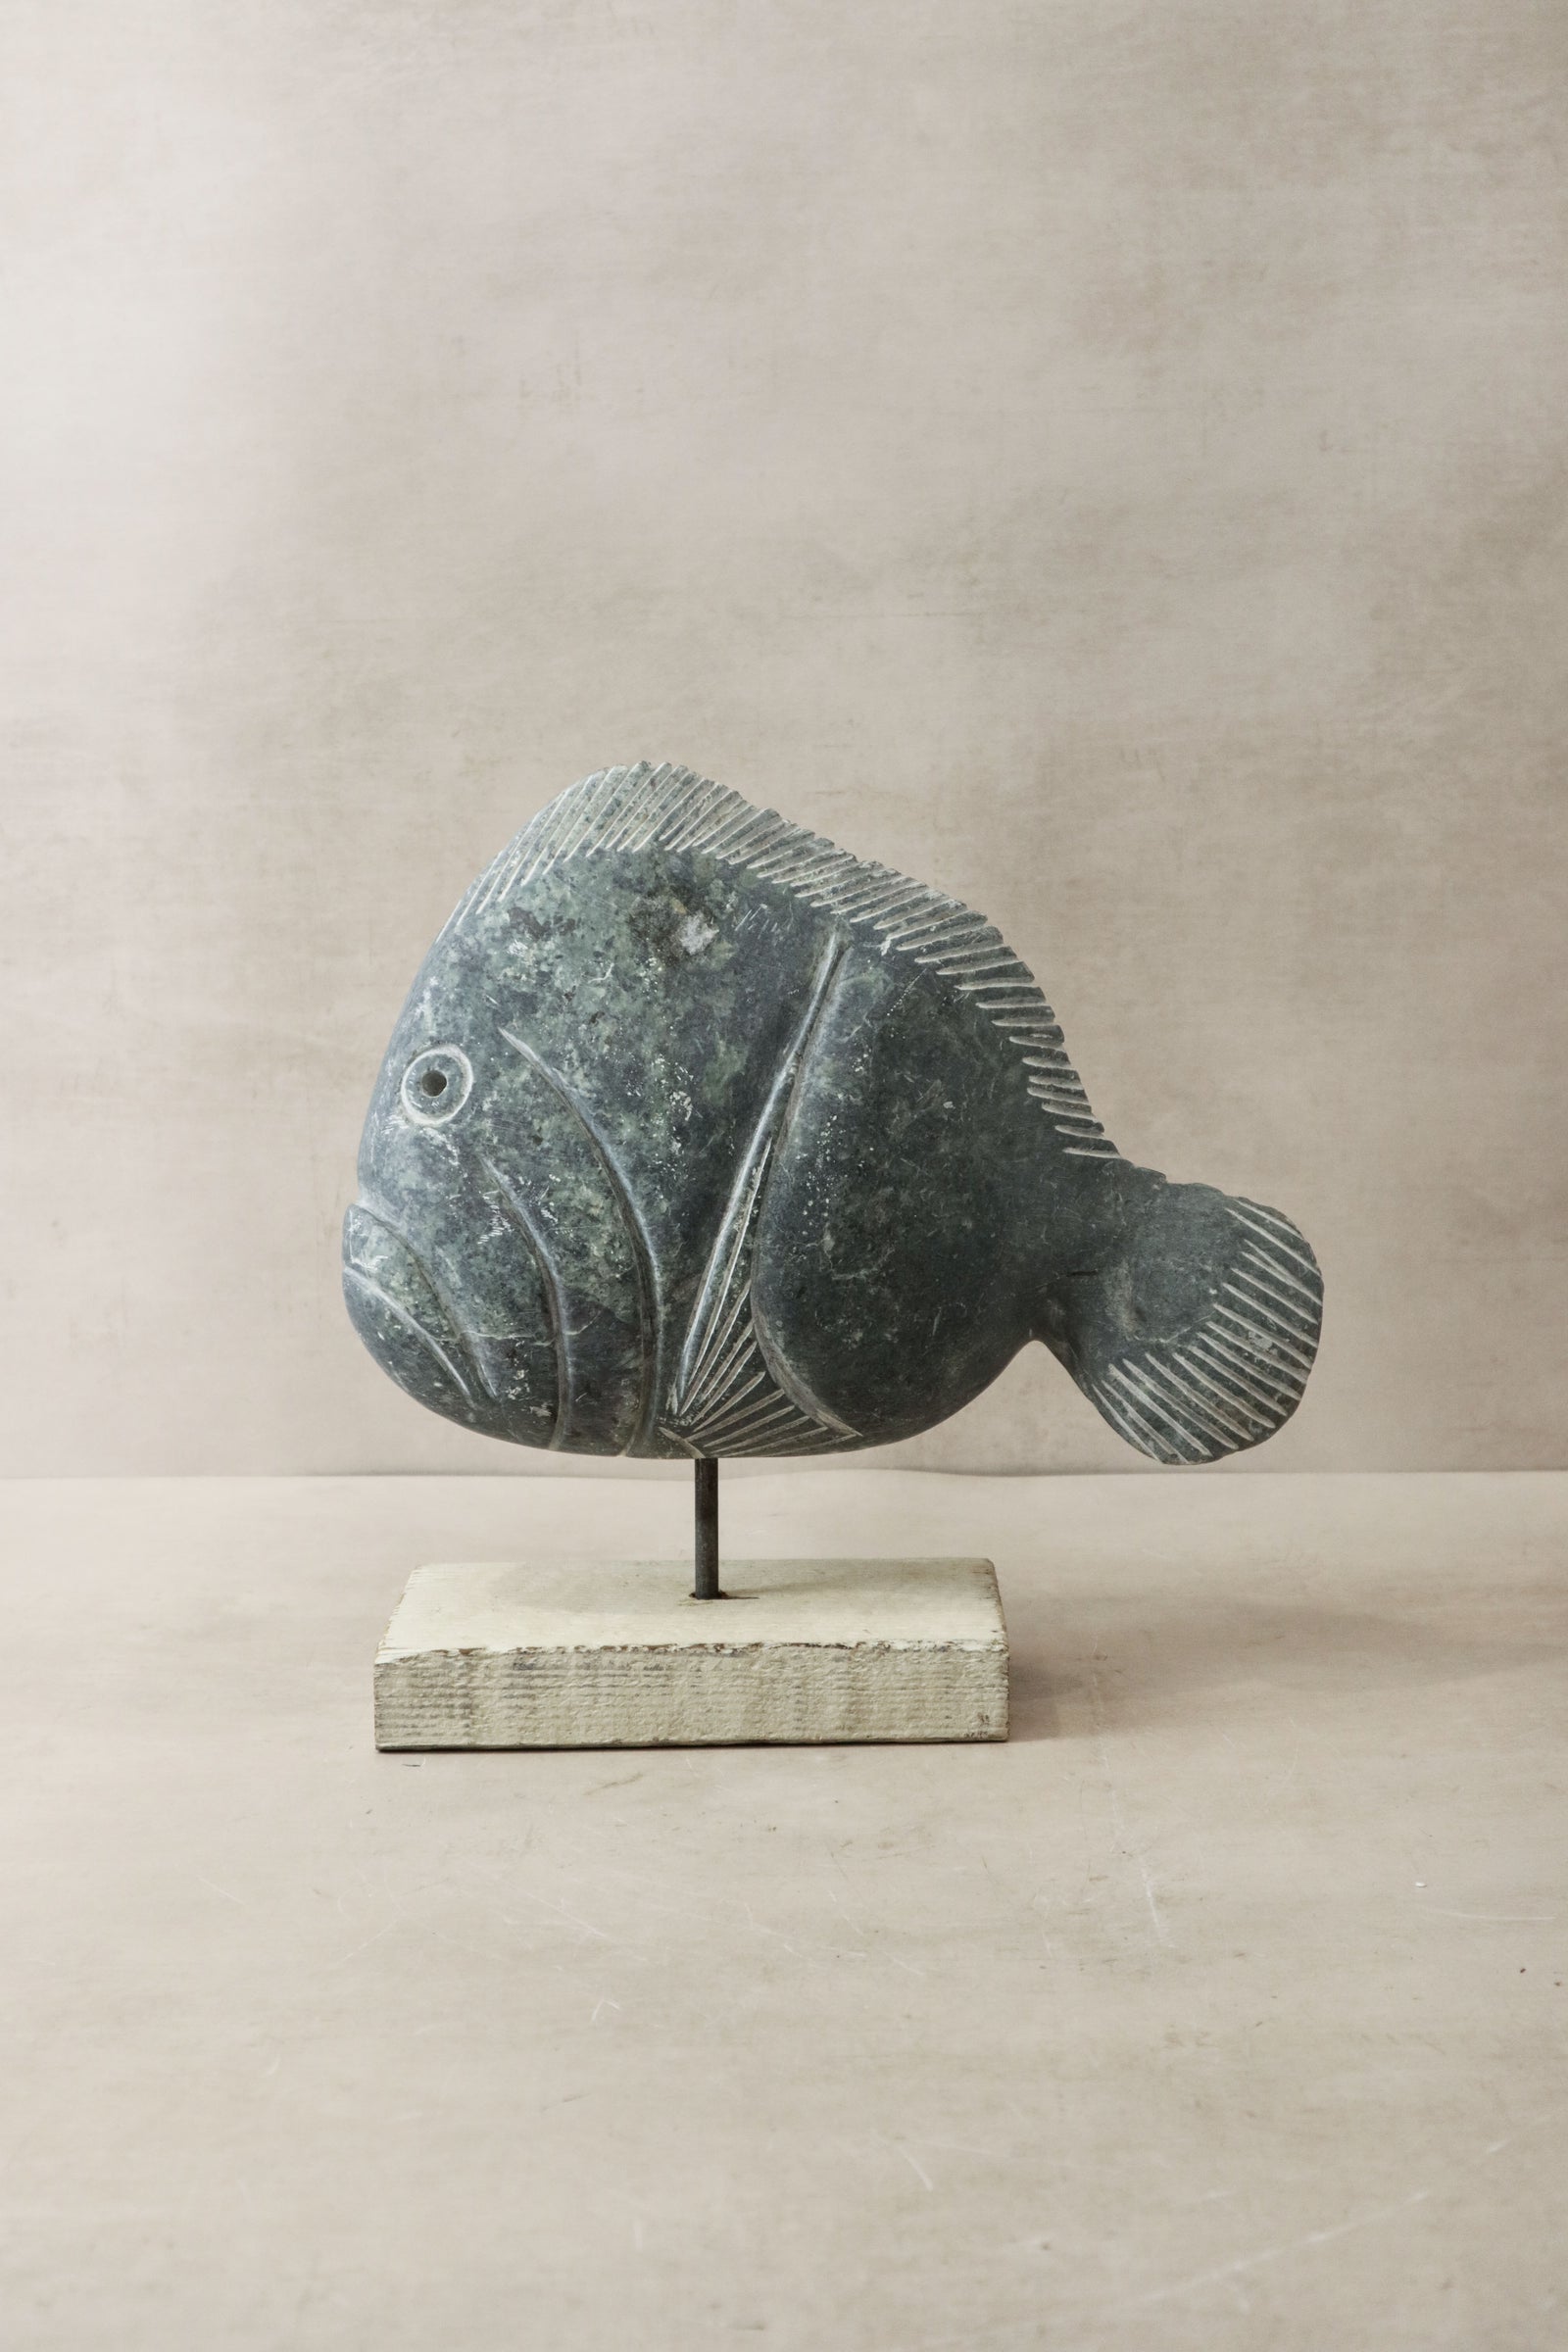 Stone Fish Sculpture - Zimbabwe - 35.1